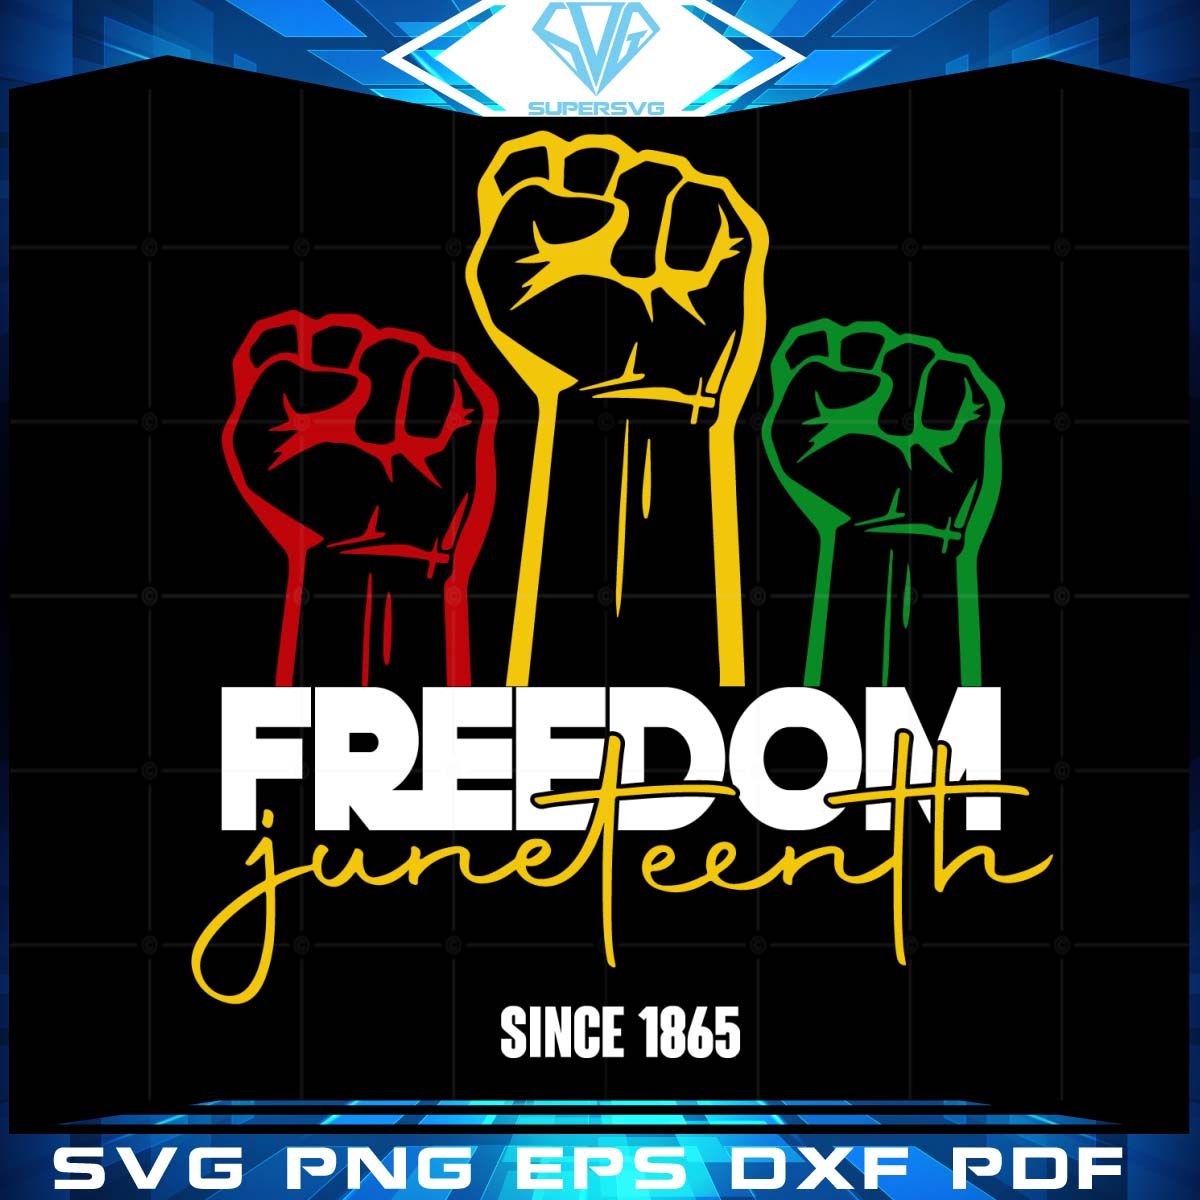 Freedom Juneteenth Since 1865 Svg, Juneteenth Svg